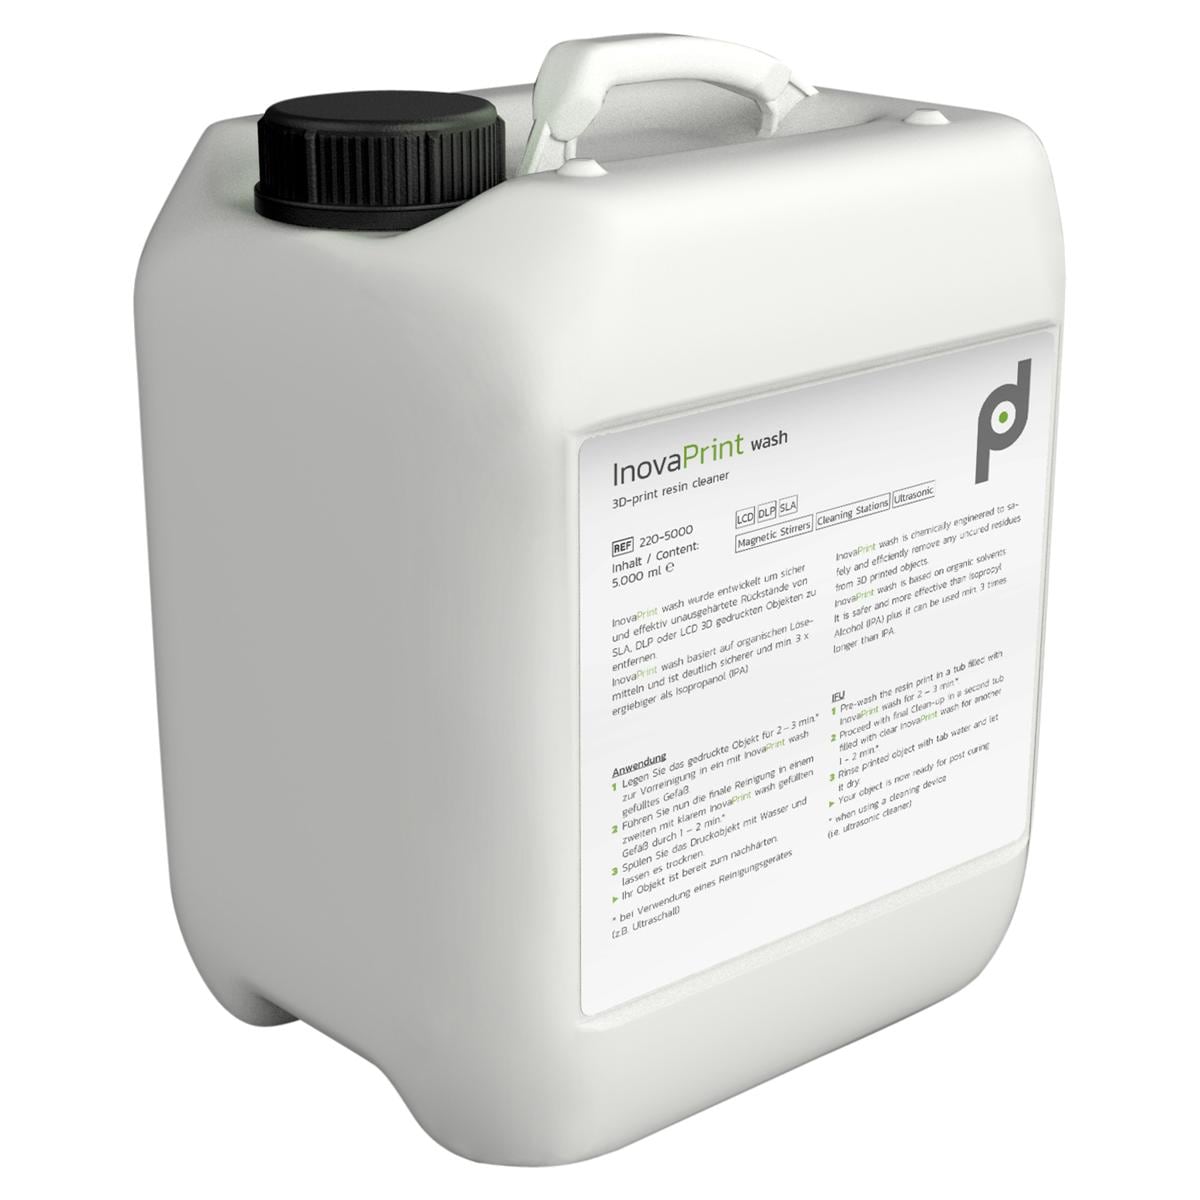 InovaPrint wash - Kanister 5 Liter